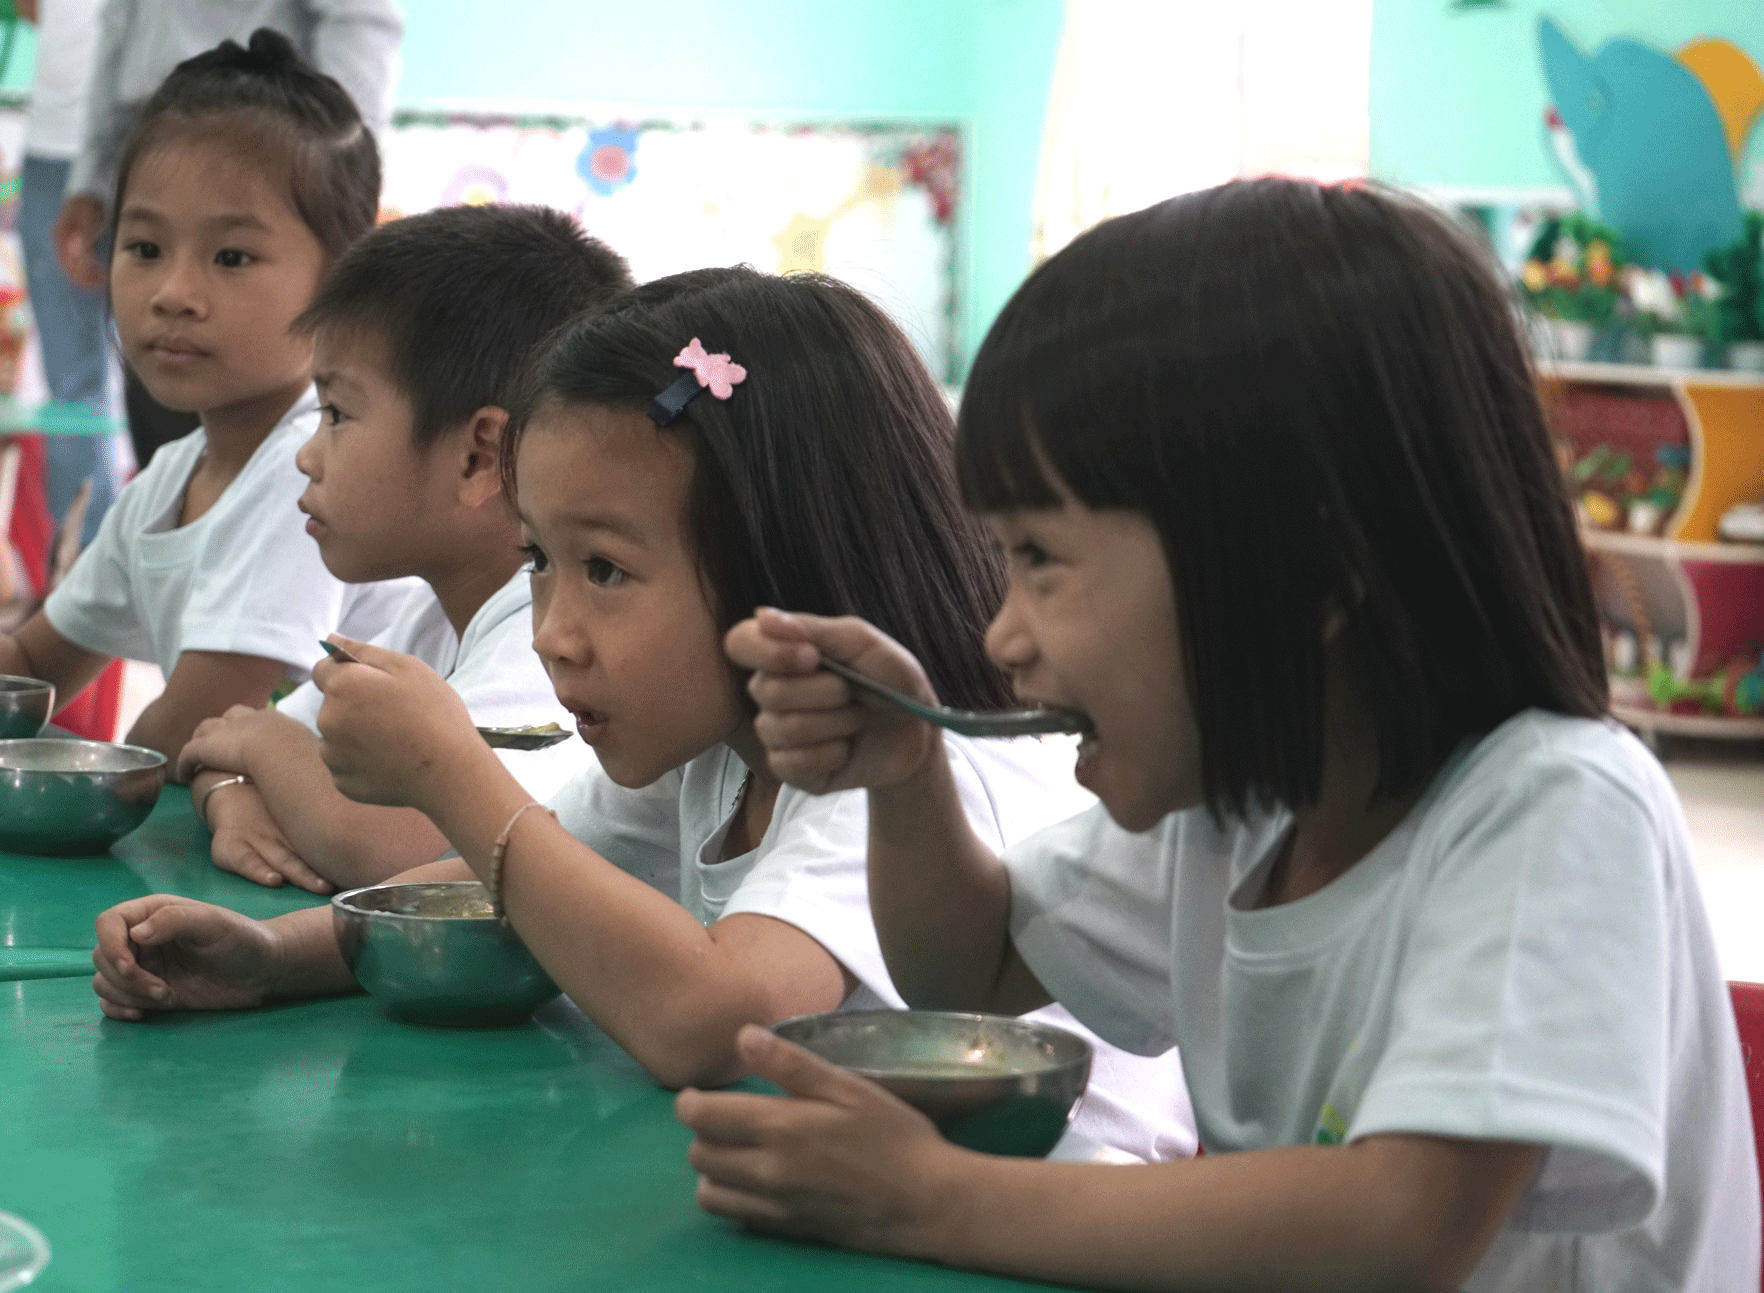 Amway kiên định với mục tiêu hỗ trợ trẻ em suy dinh dưỡng tại Việt Nam